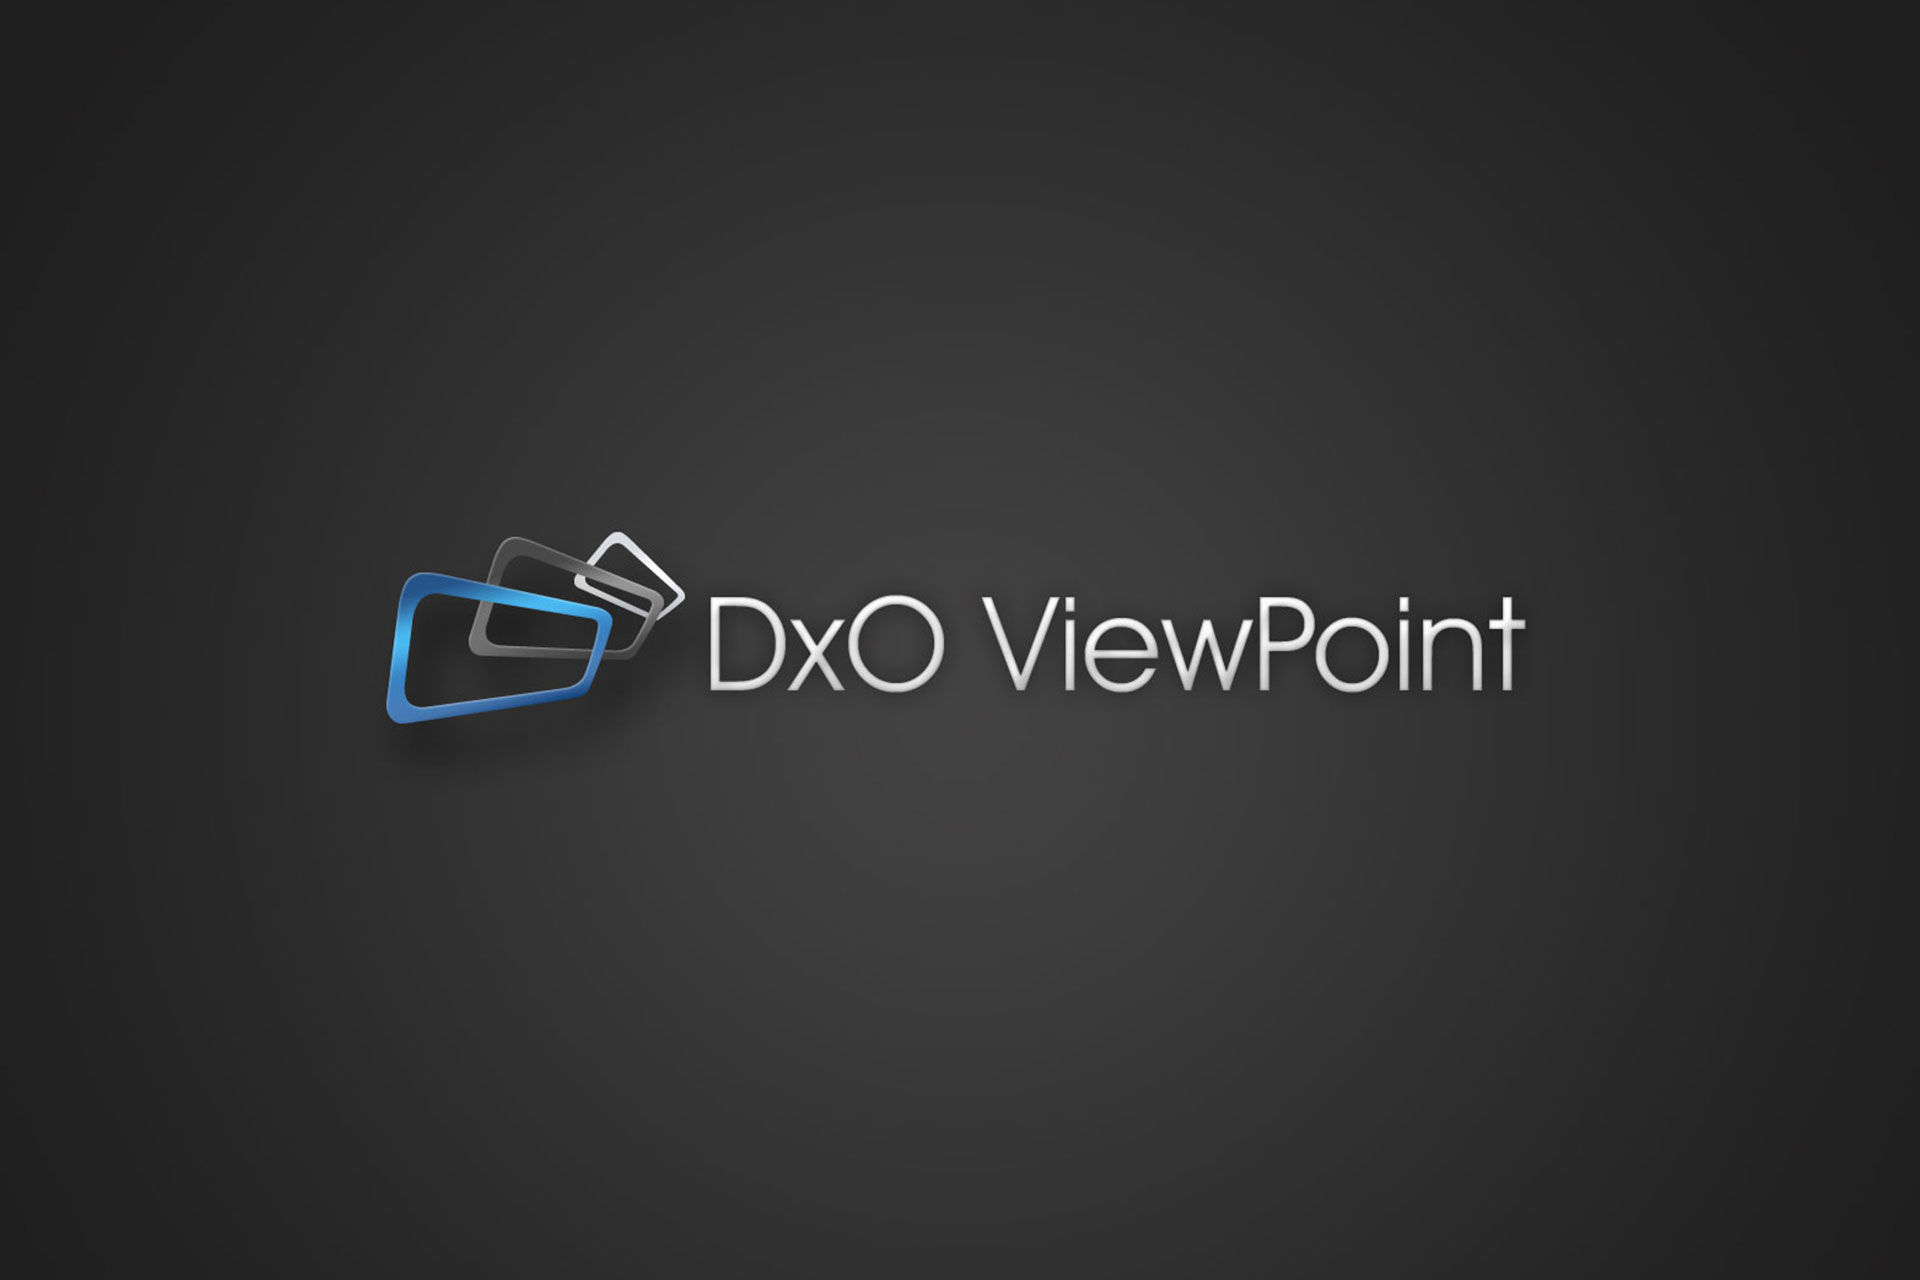 descarga gratis dxo viewpoint